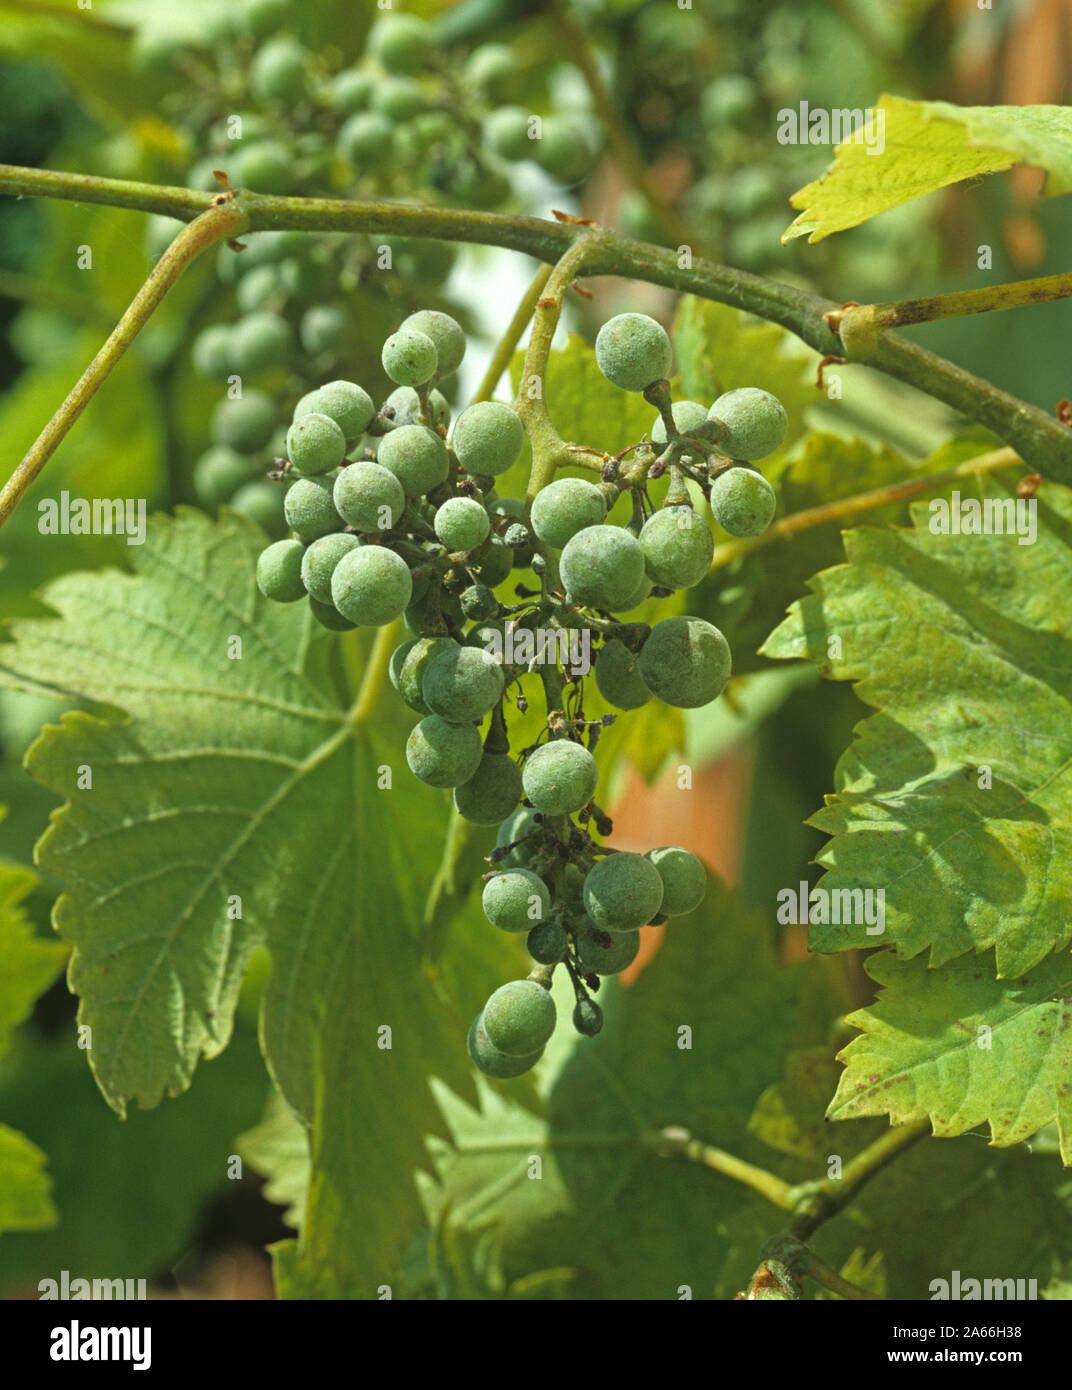 Pulverförmige milew (Uncinula necator) Pilzerkrankung Infektion auf armen Obst auf einer Weinrebe Stockfoto